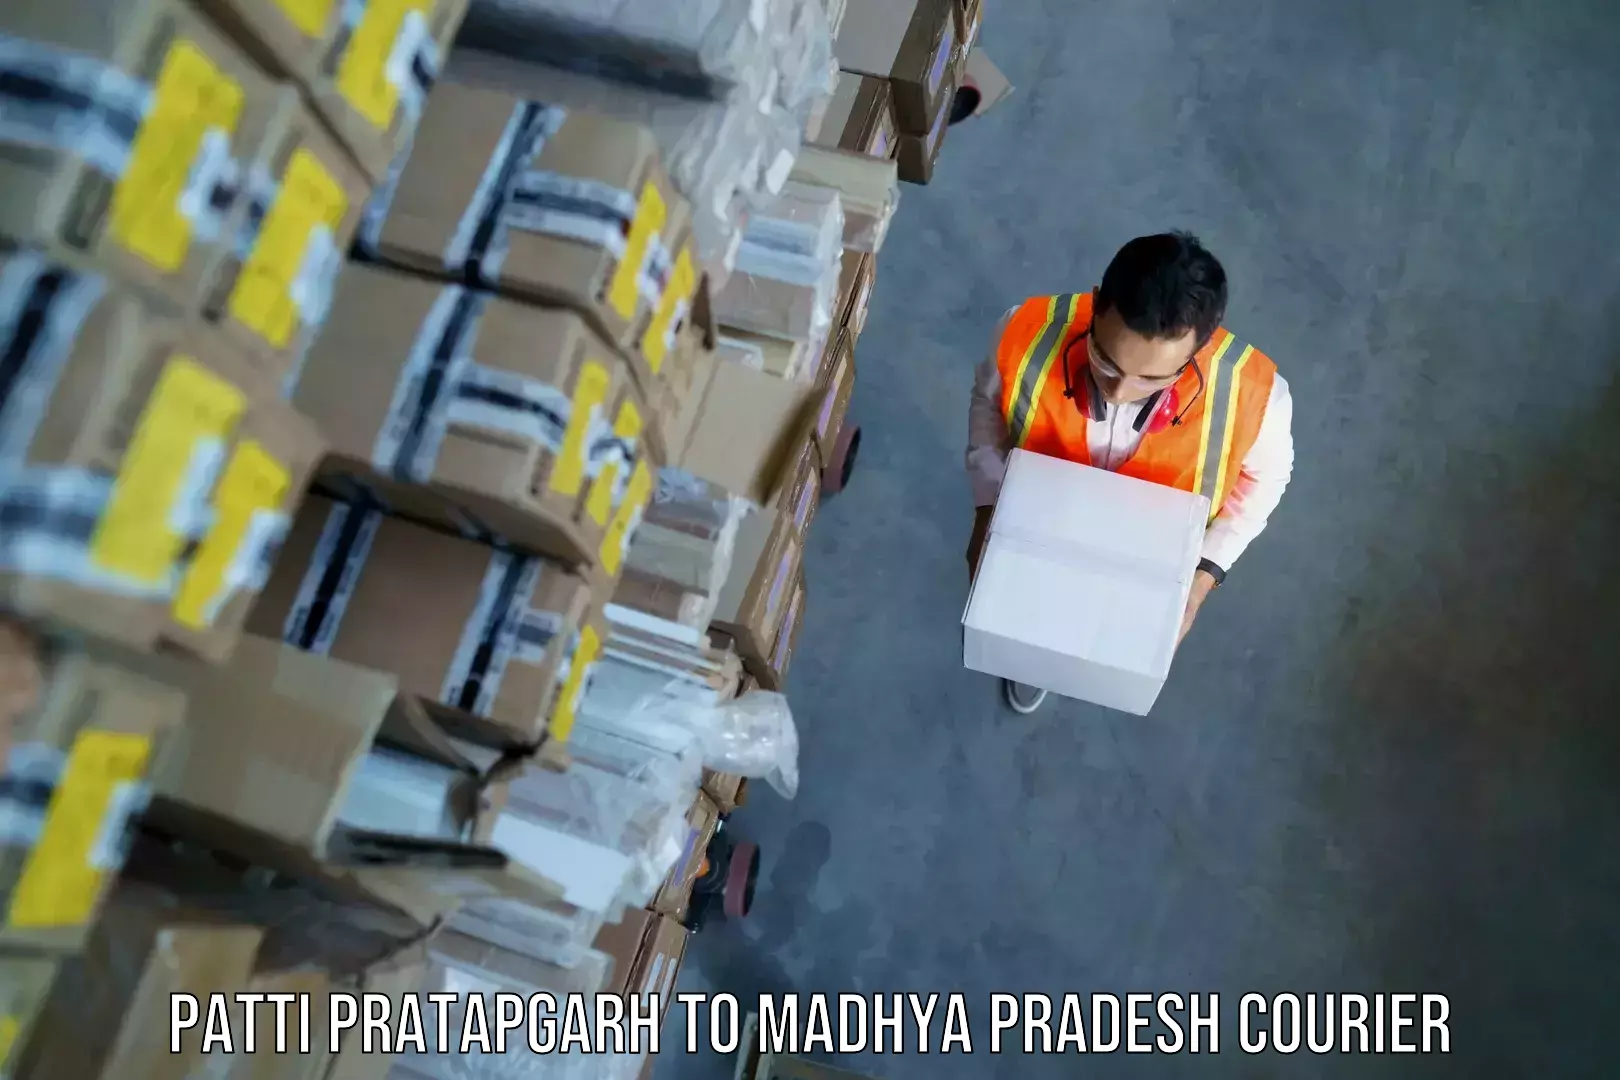 Baggage shipping service Patti Pratapgarh to Bhind